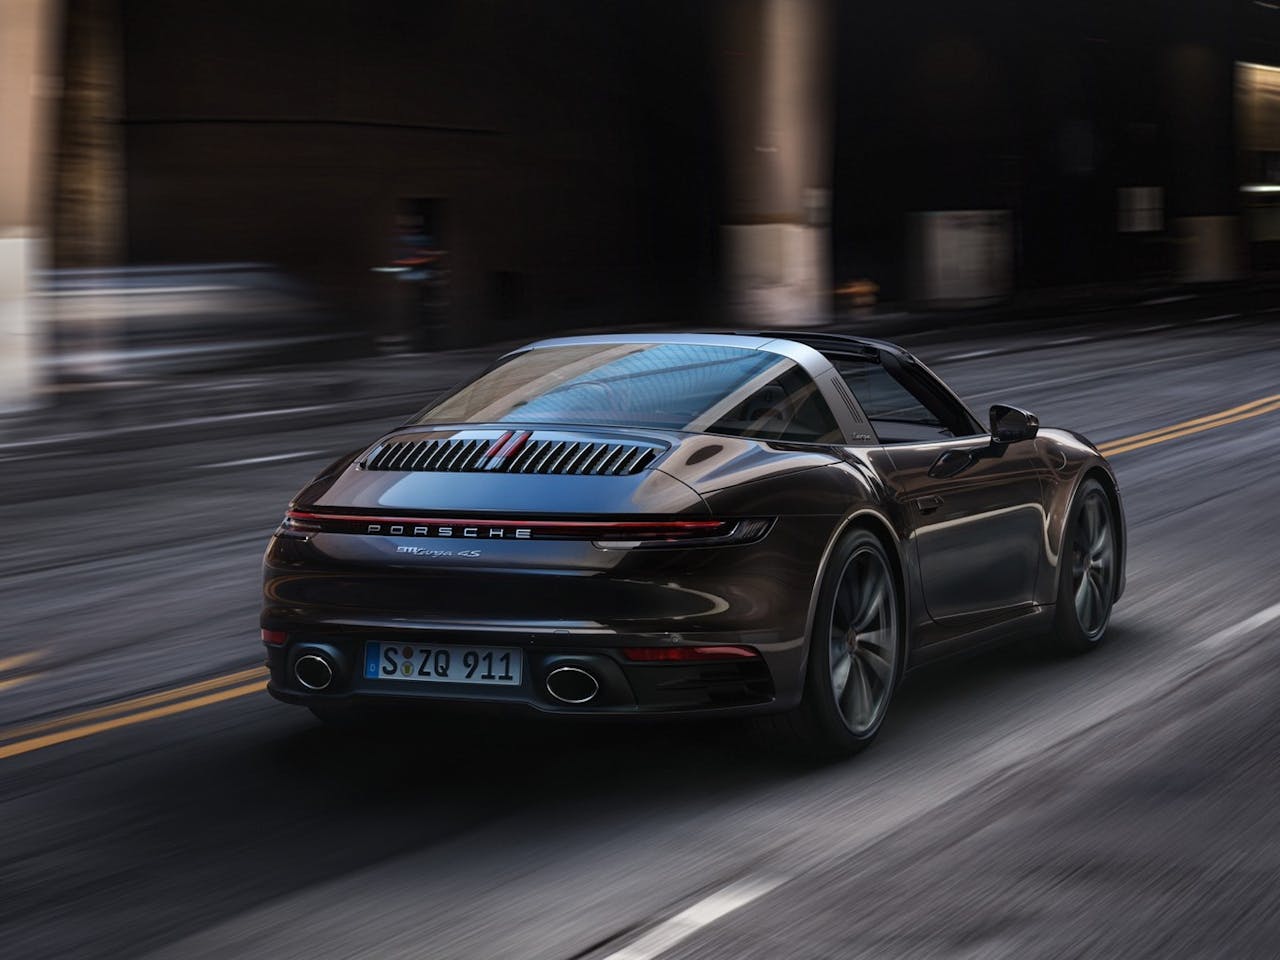 Porsche Targa